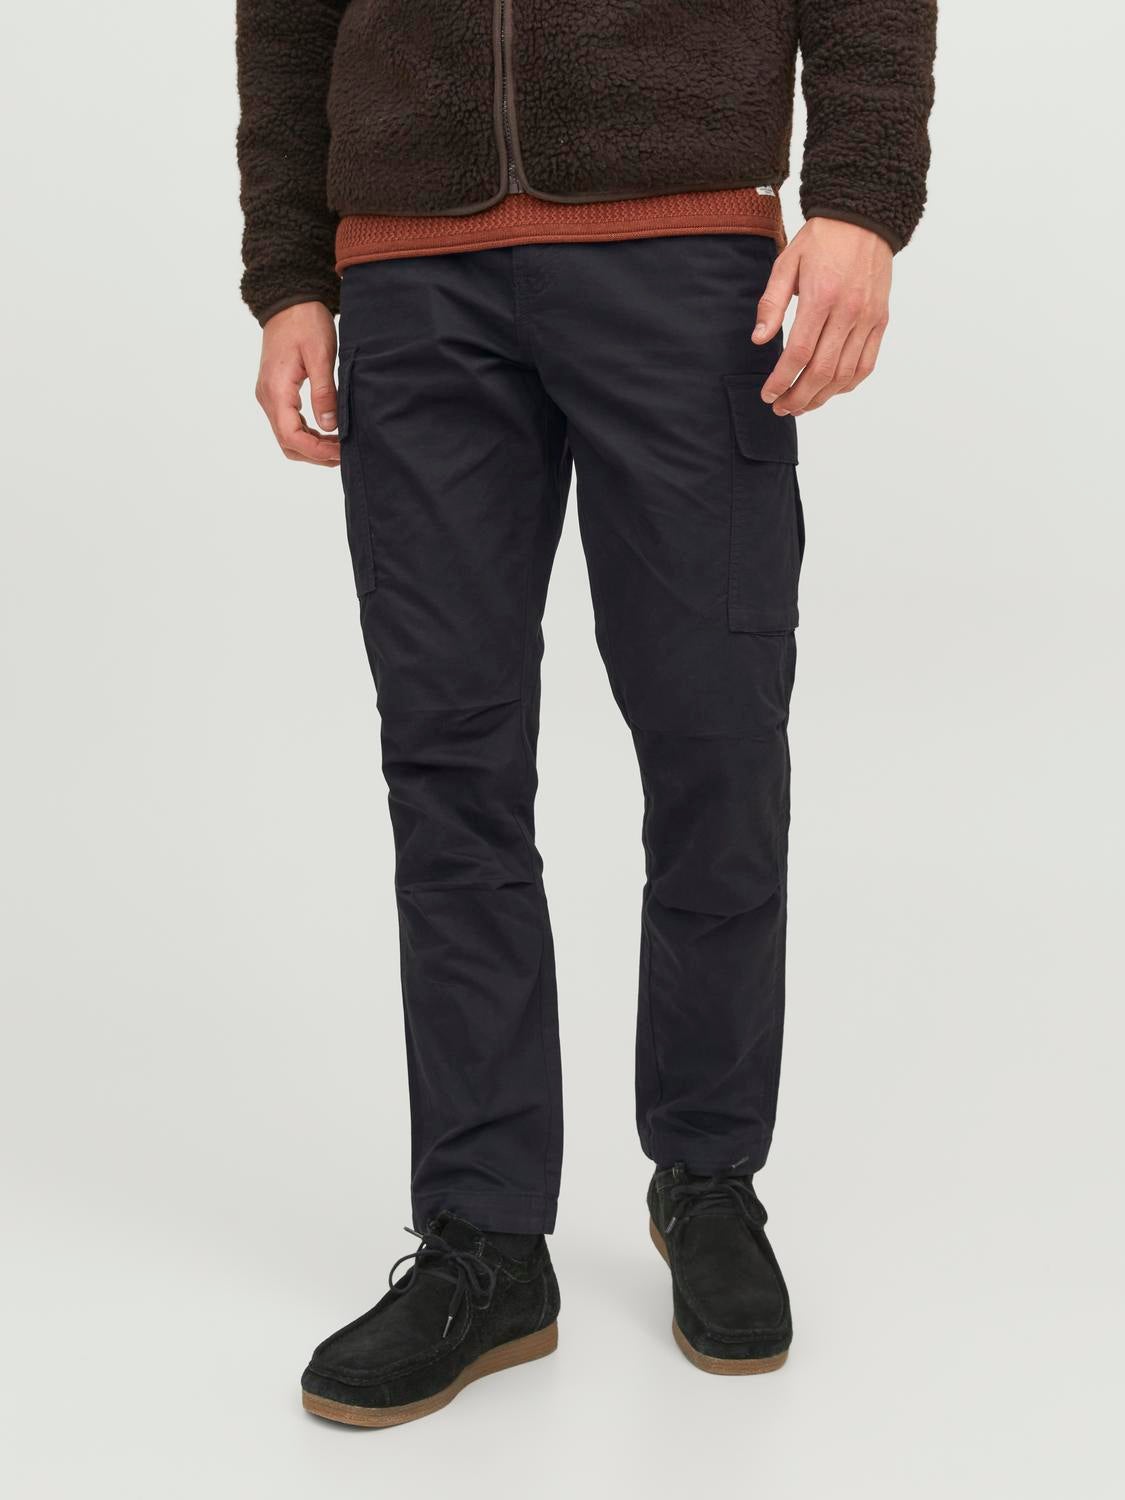 Jack & Jones Cargo pants for men - Buy now at Boozt.com